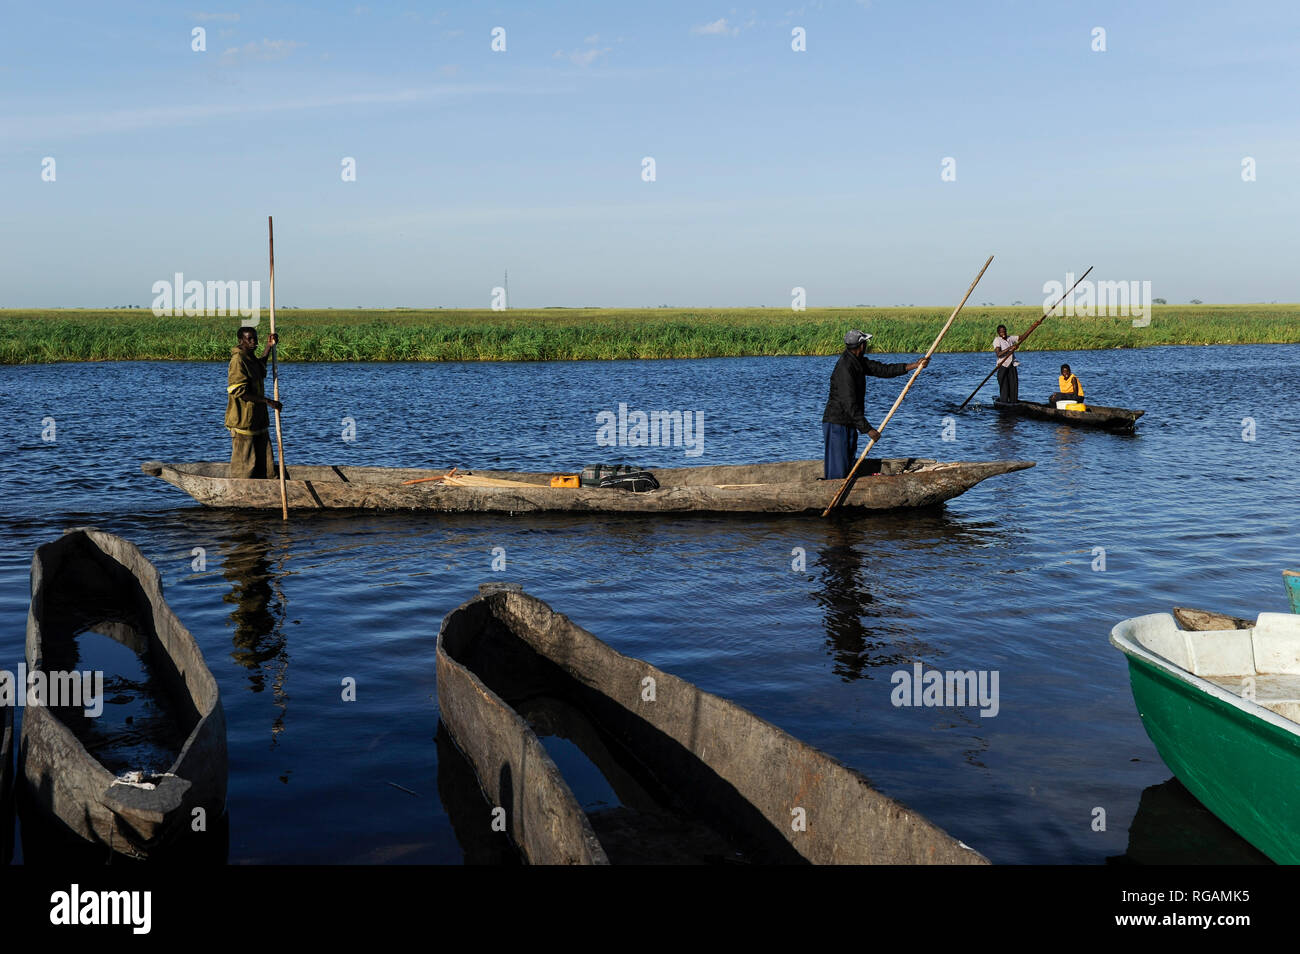 ZAMBIA Barotseland Mongu, Mulamba harbour at river Zambezi flood plain / SAMBIA Barotseland , Stadt Mongu , Hafen Mulamba in der Flutebene des Zambezi Fluss Stock Photo